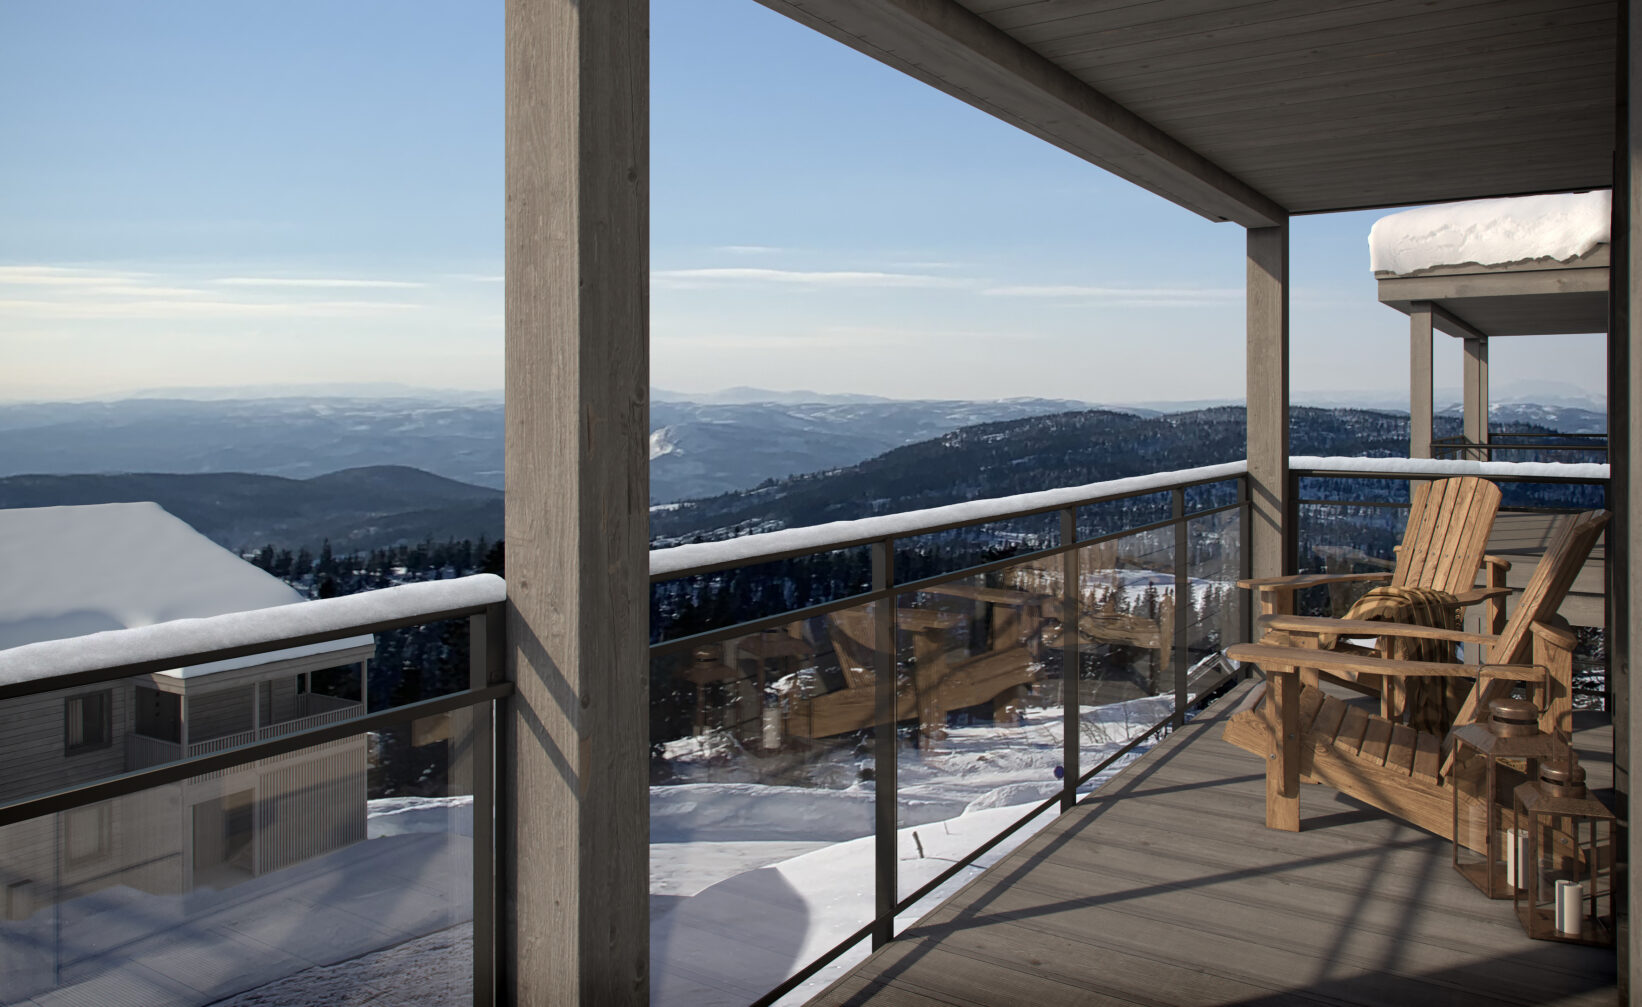 en balkong med utsikt over et snødekket fjell.